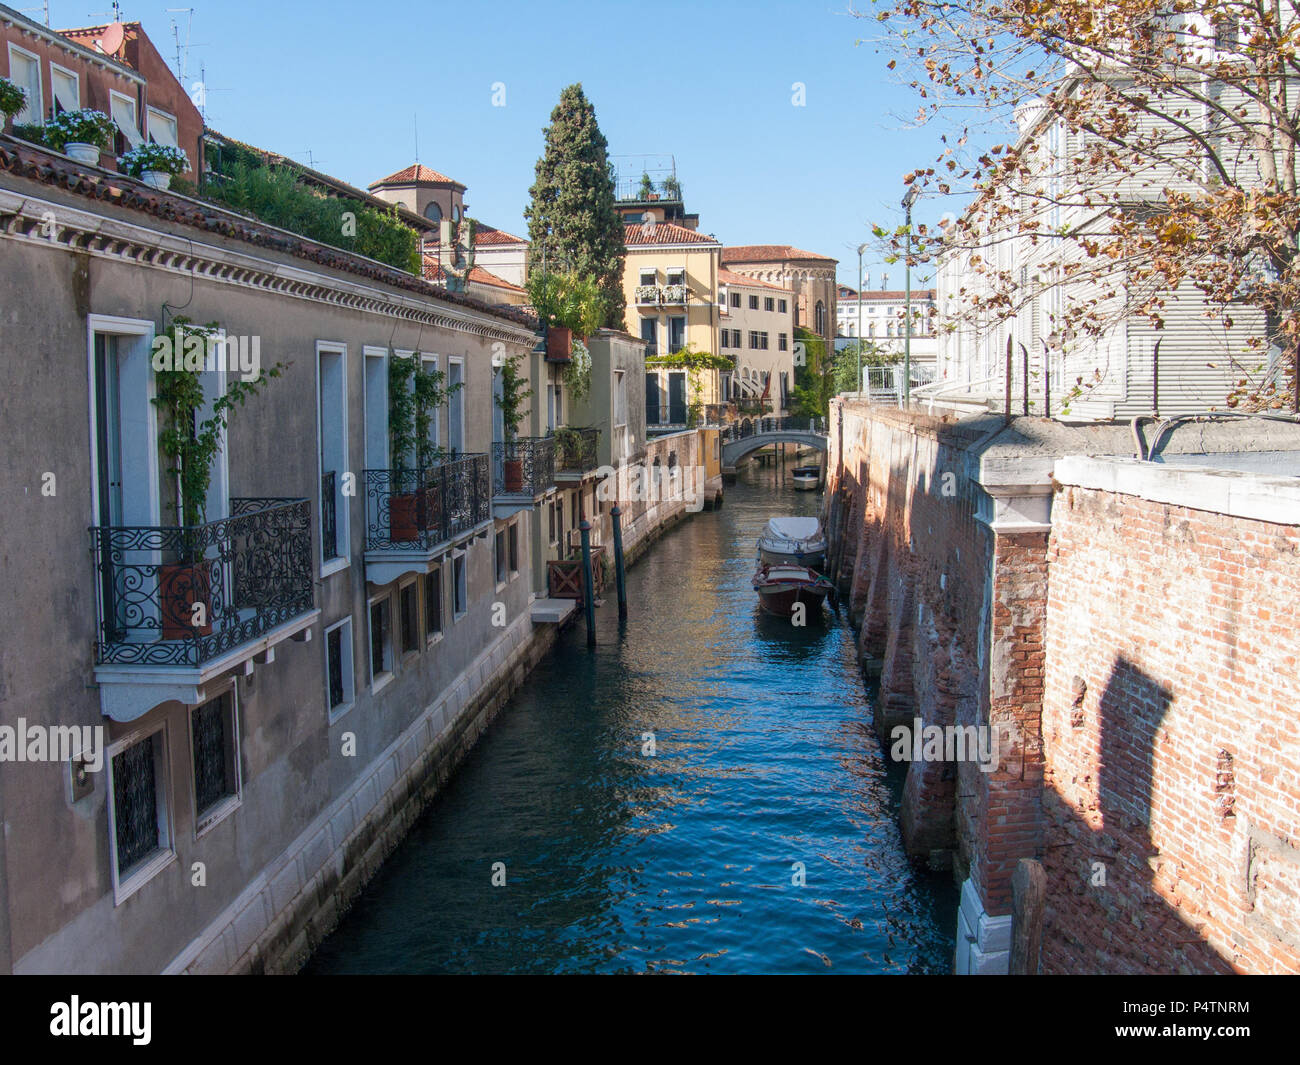 Venezia, Italia, 2 ottobre 2011: bellissimo canale veneziano Rio de la salute Foto Stock